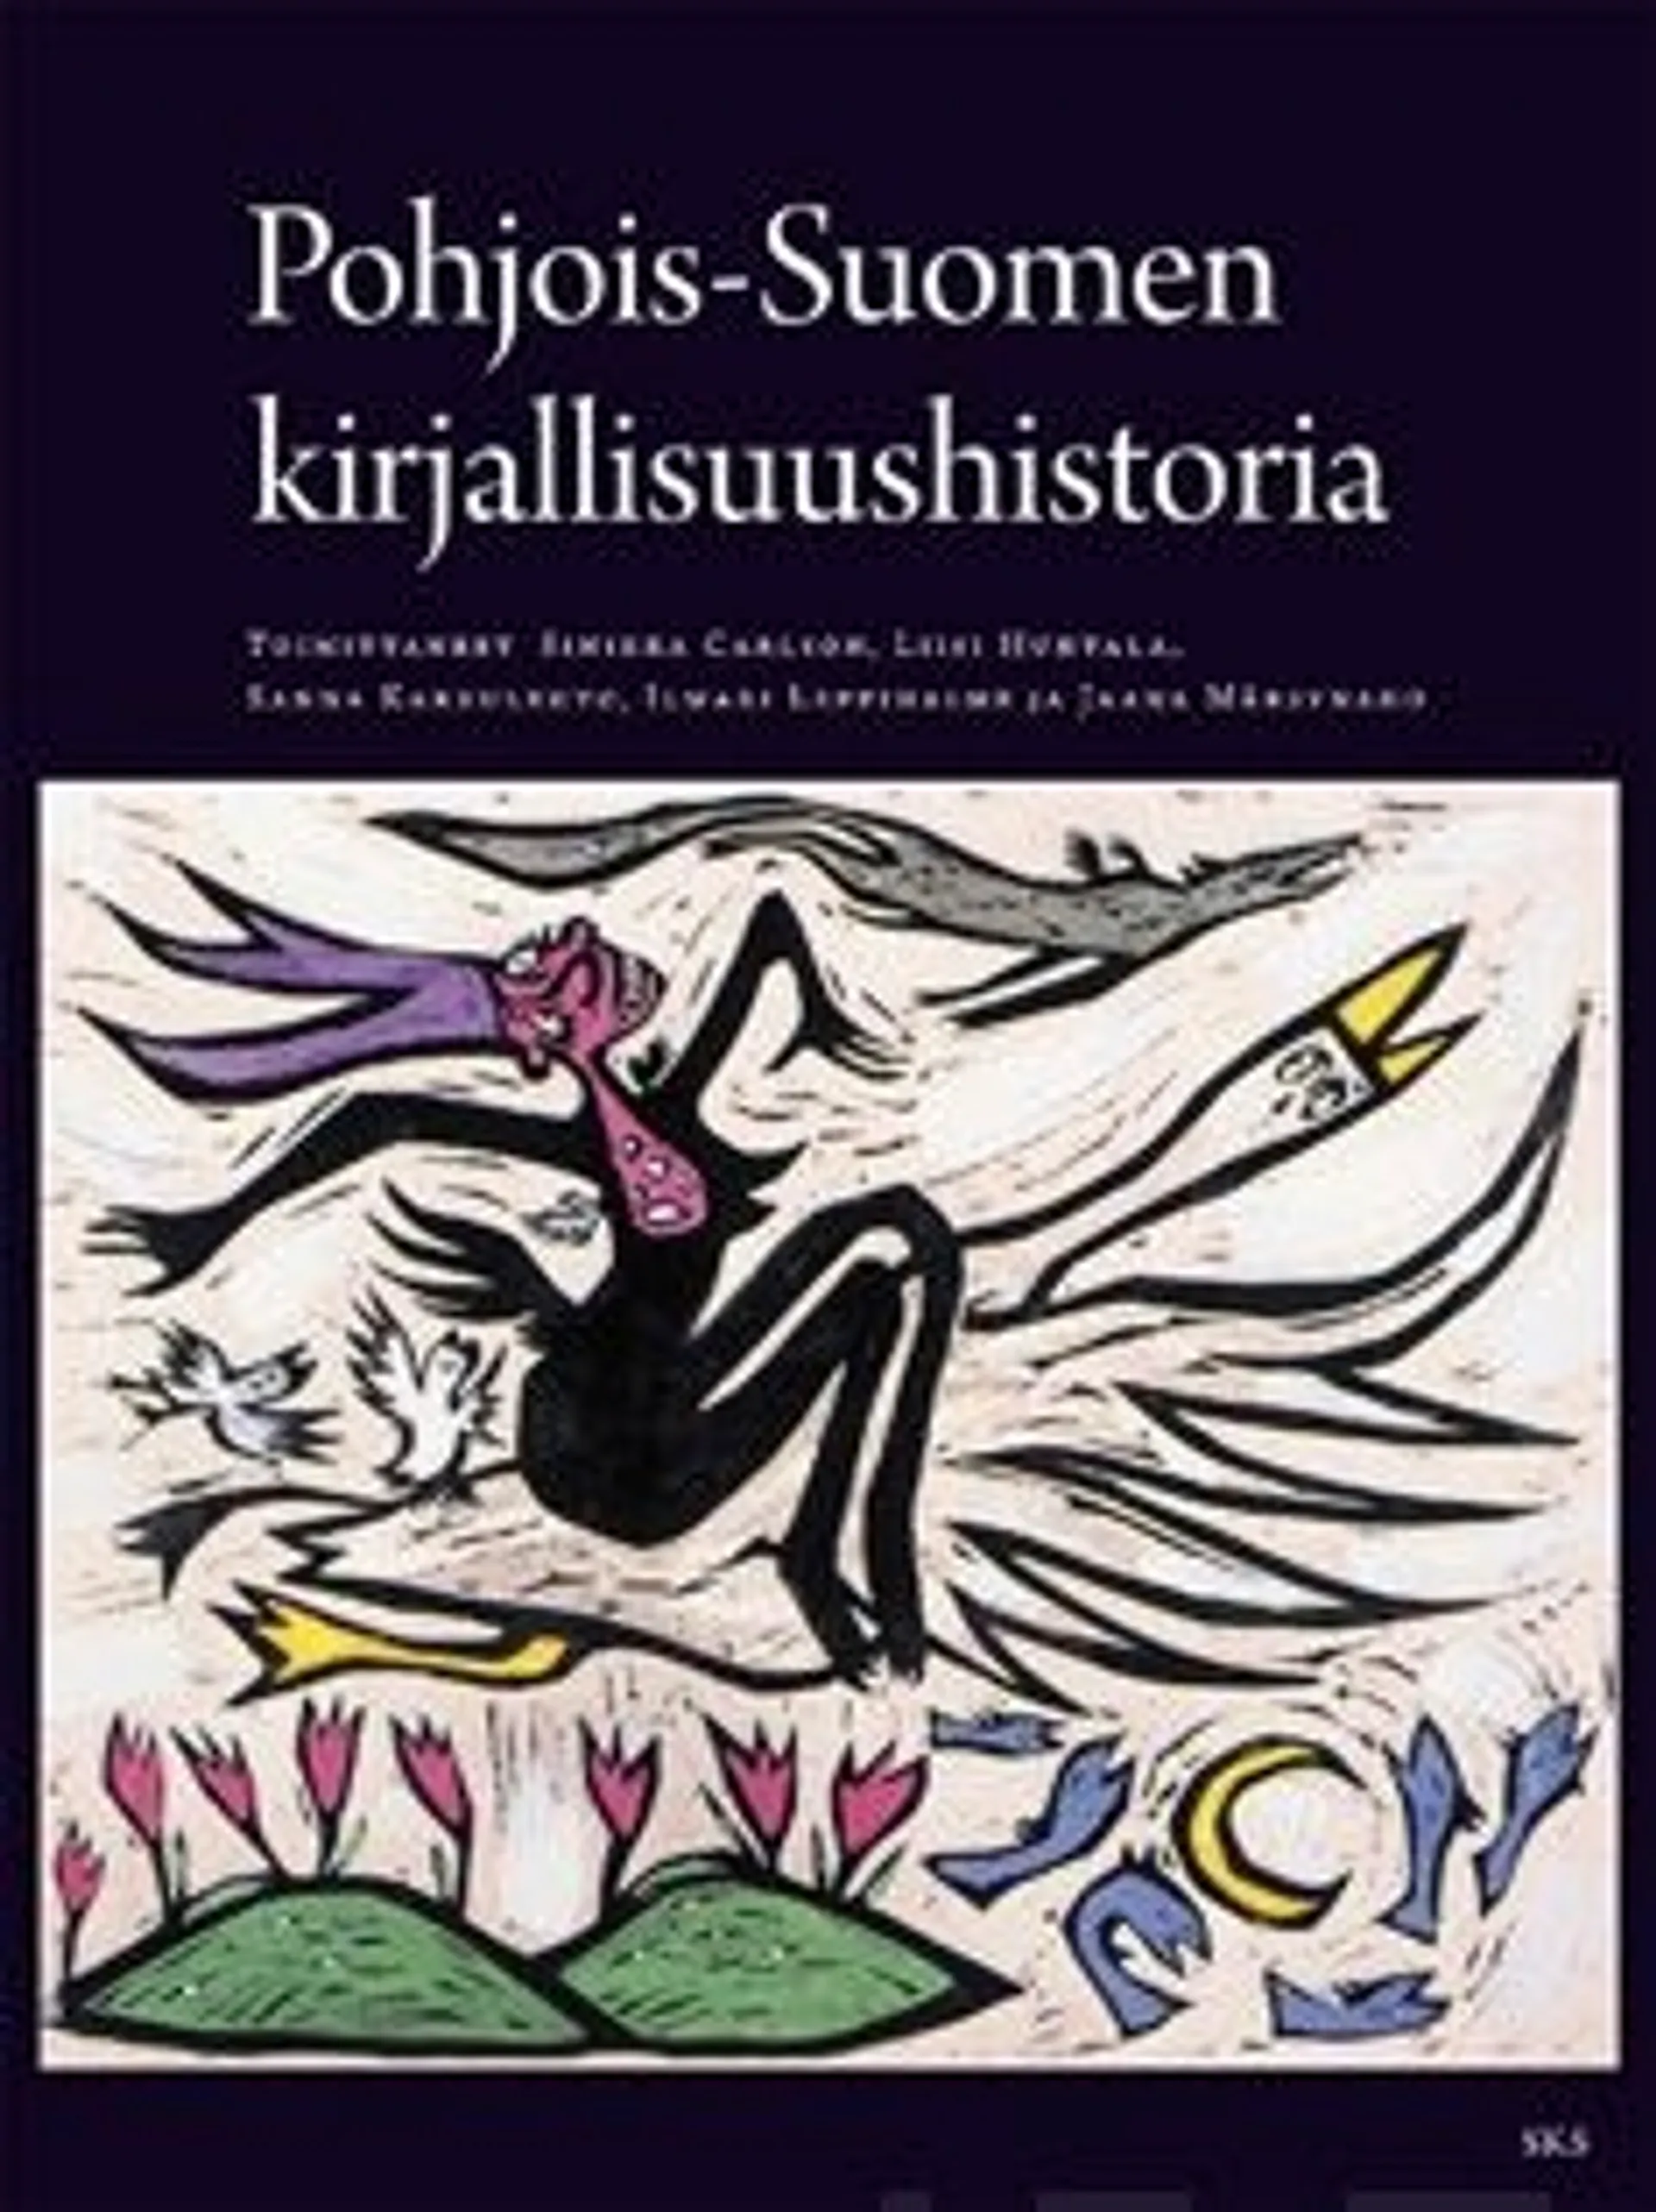 Pohjois-Suomen kirjallisuushistoria